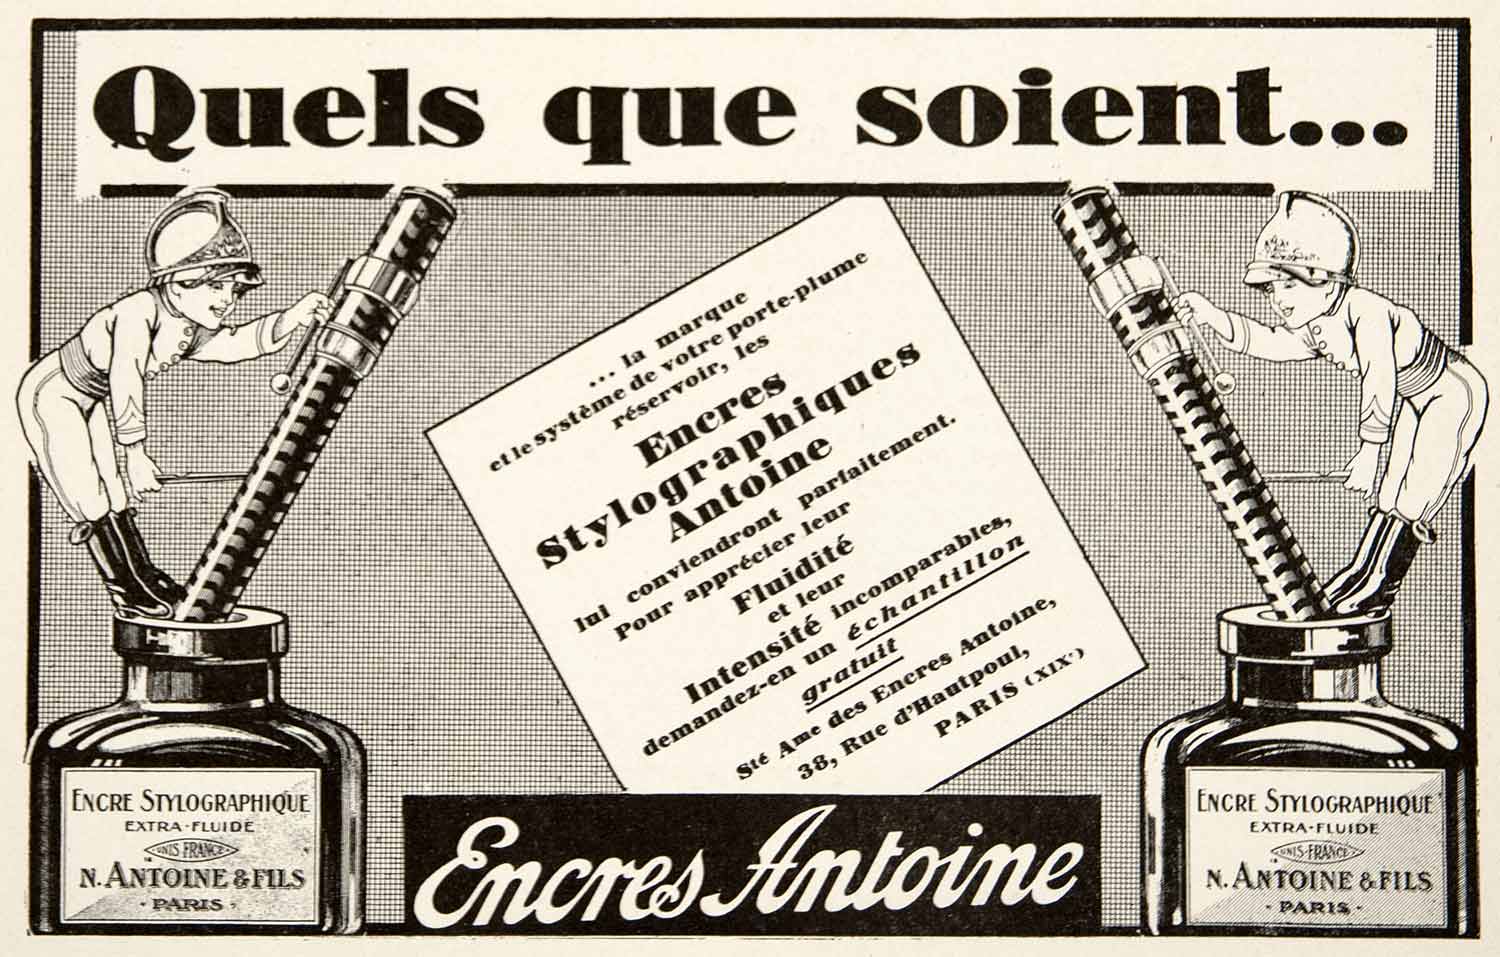 1928 Ad French Encres Stylographiques Inks Antoine, 38 Rue d'Hautpout Paris VEN5